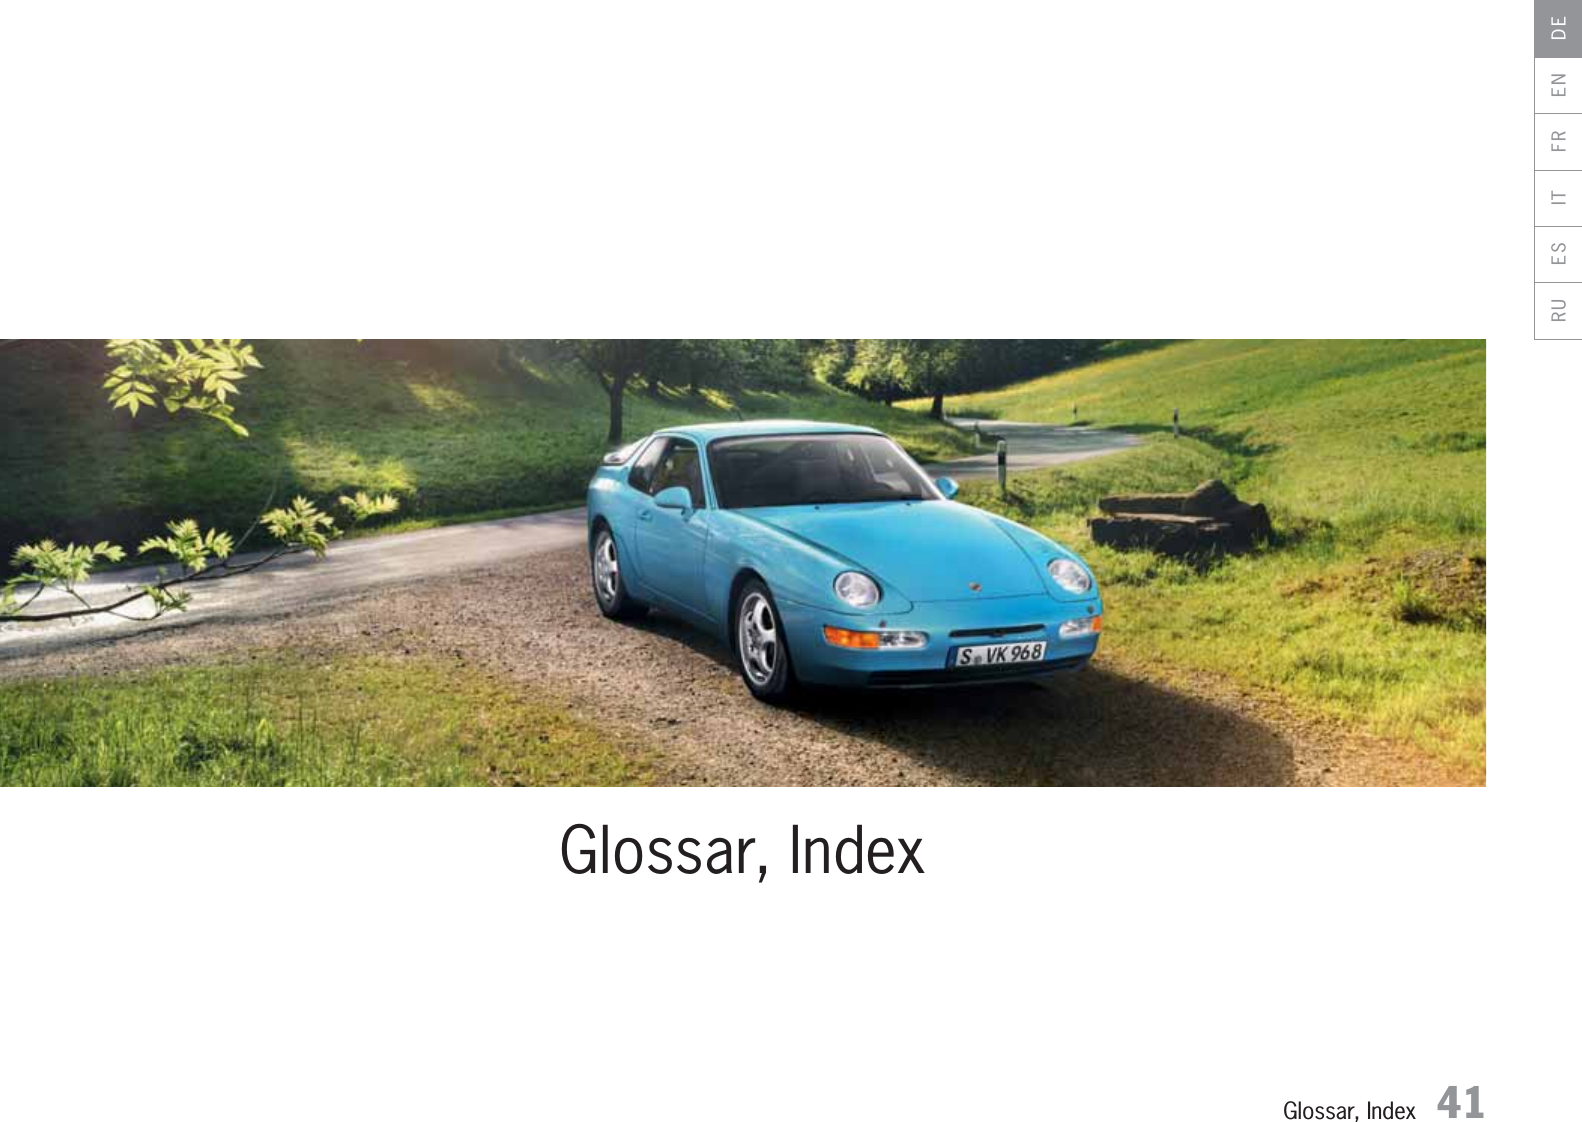 Glossar, Index 41DEENFRITESRUGlossar, Index